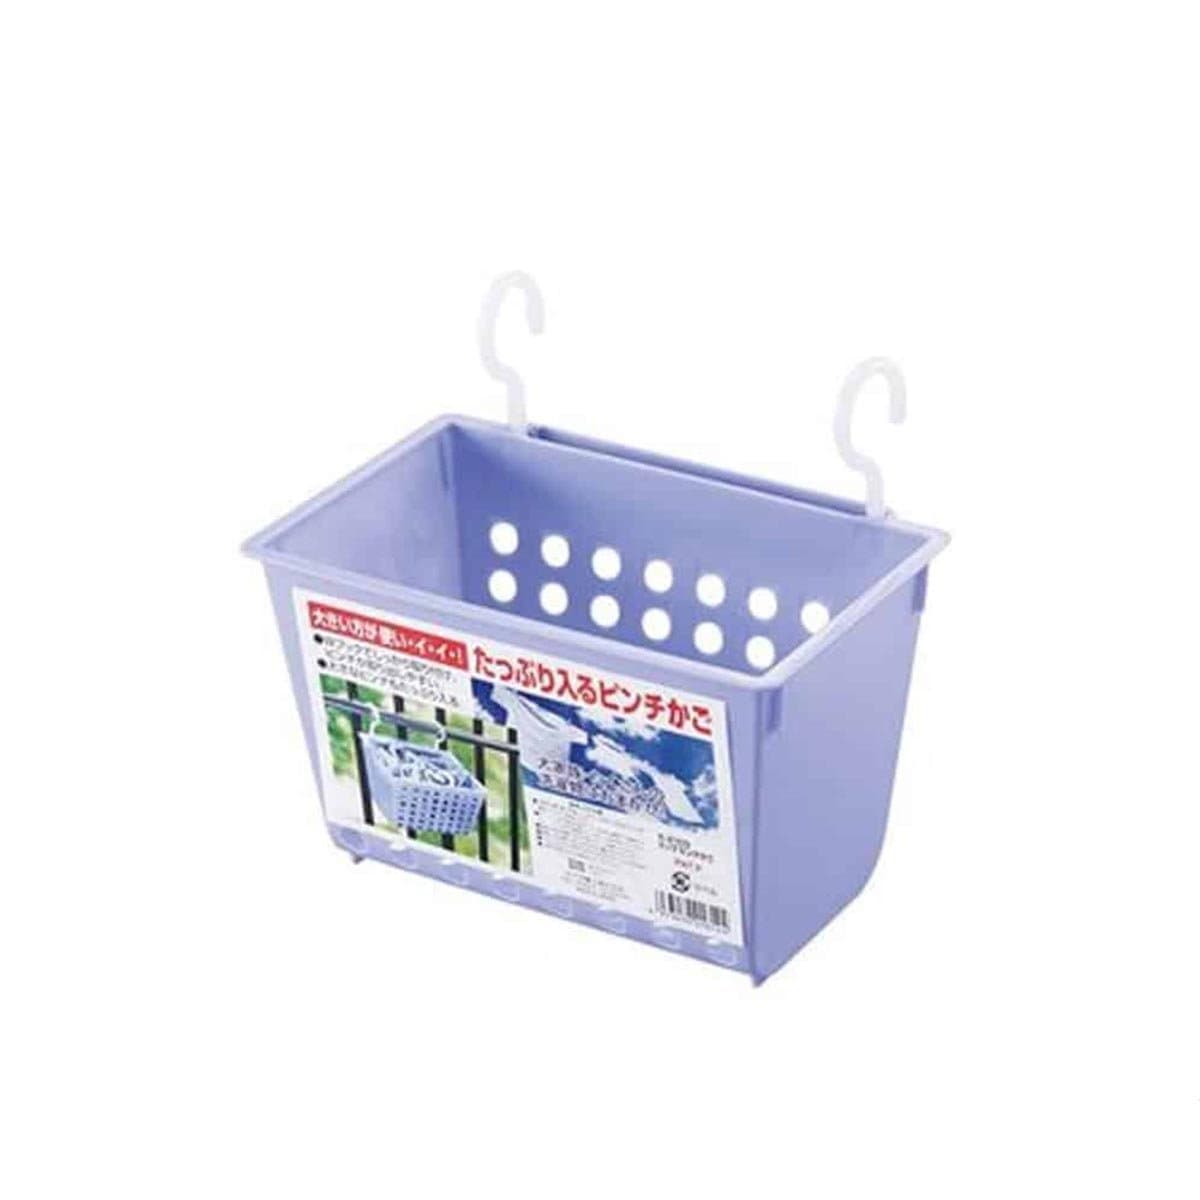 Japanese Plastic Laundry Clothespin Basket With Hooks Large